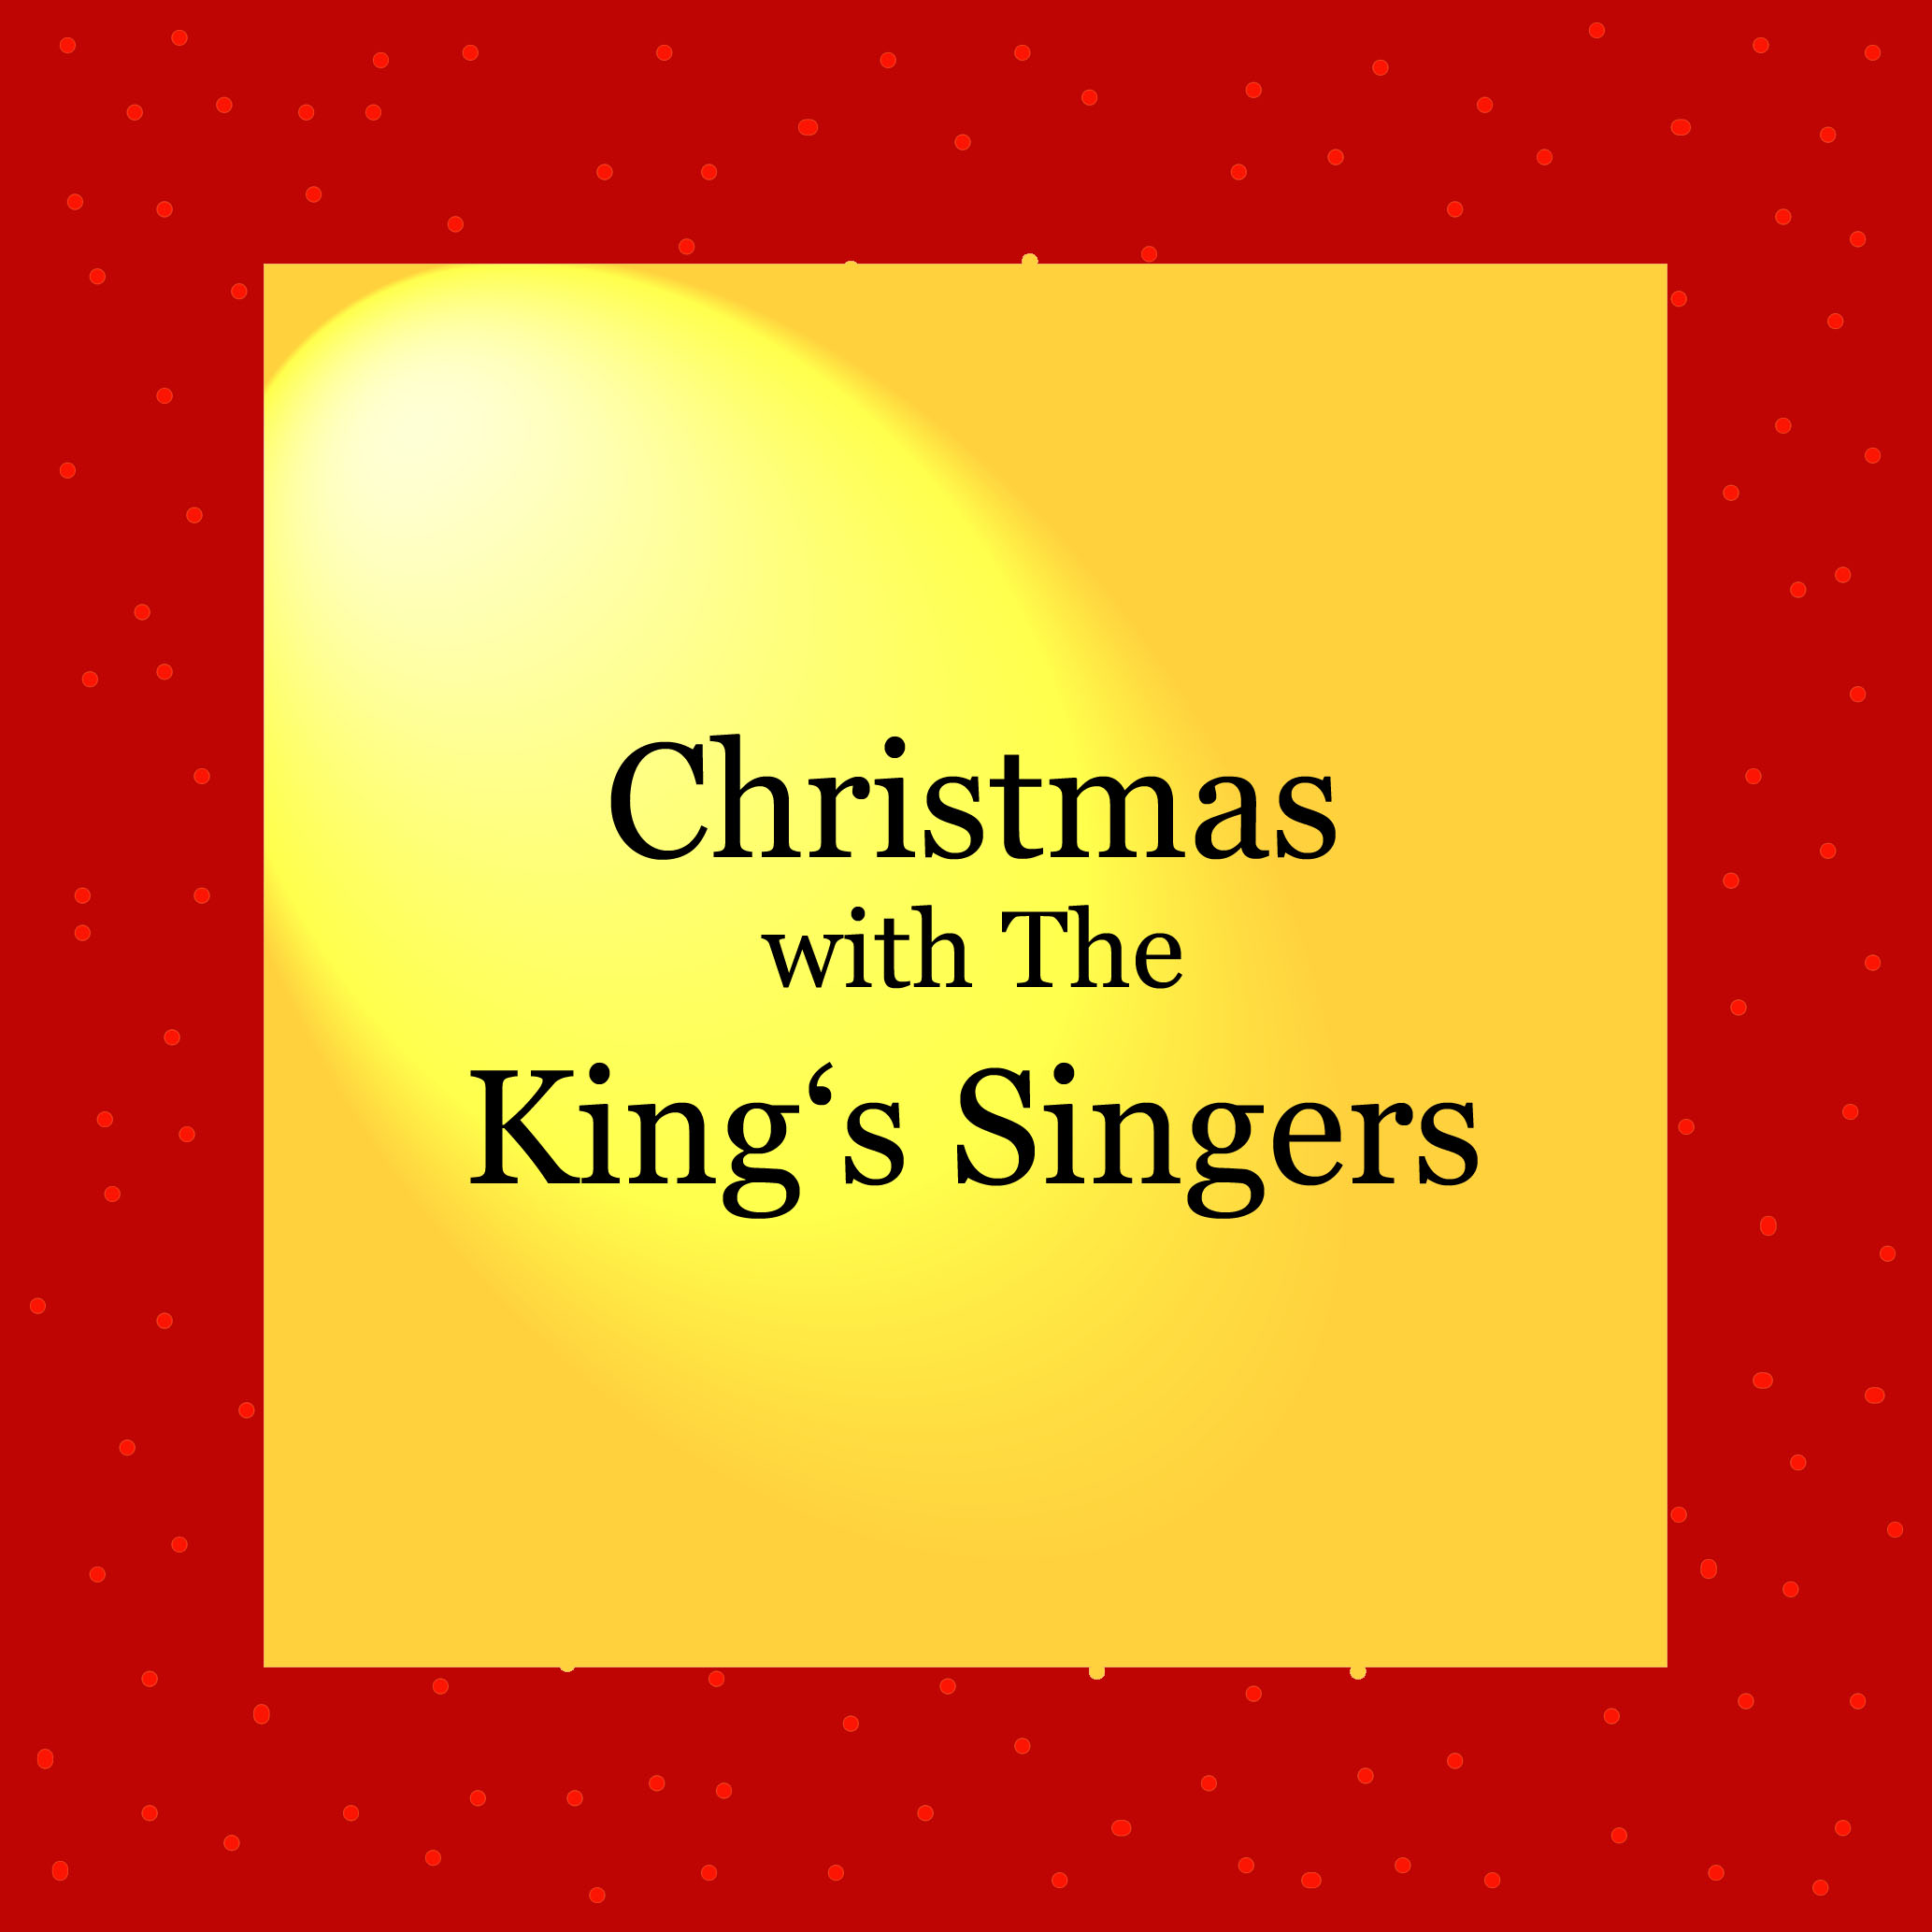 Vorfreude auf Weihnachten - Christmas with The King's Singers - kultur4all.de